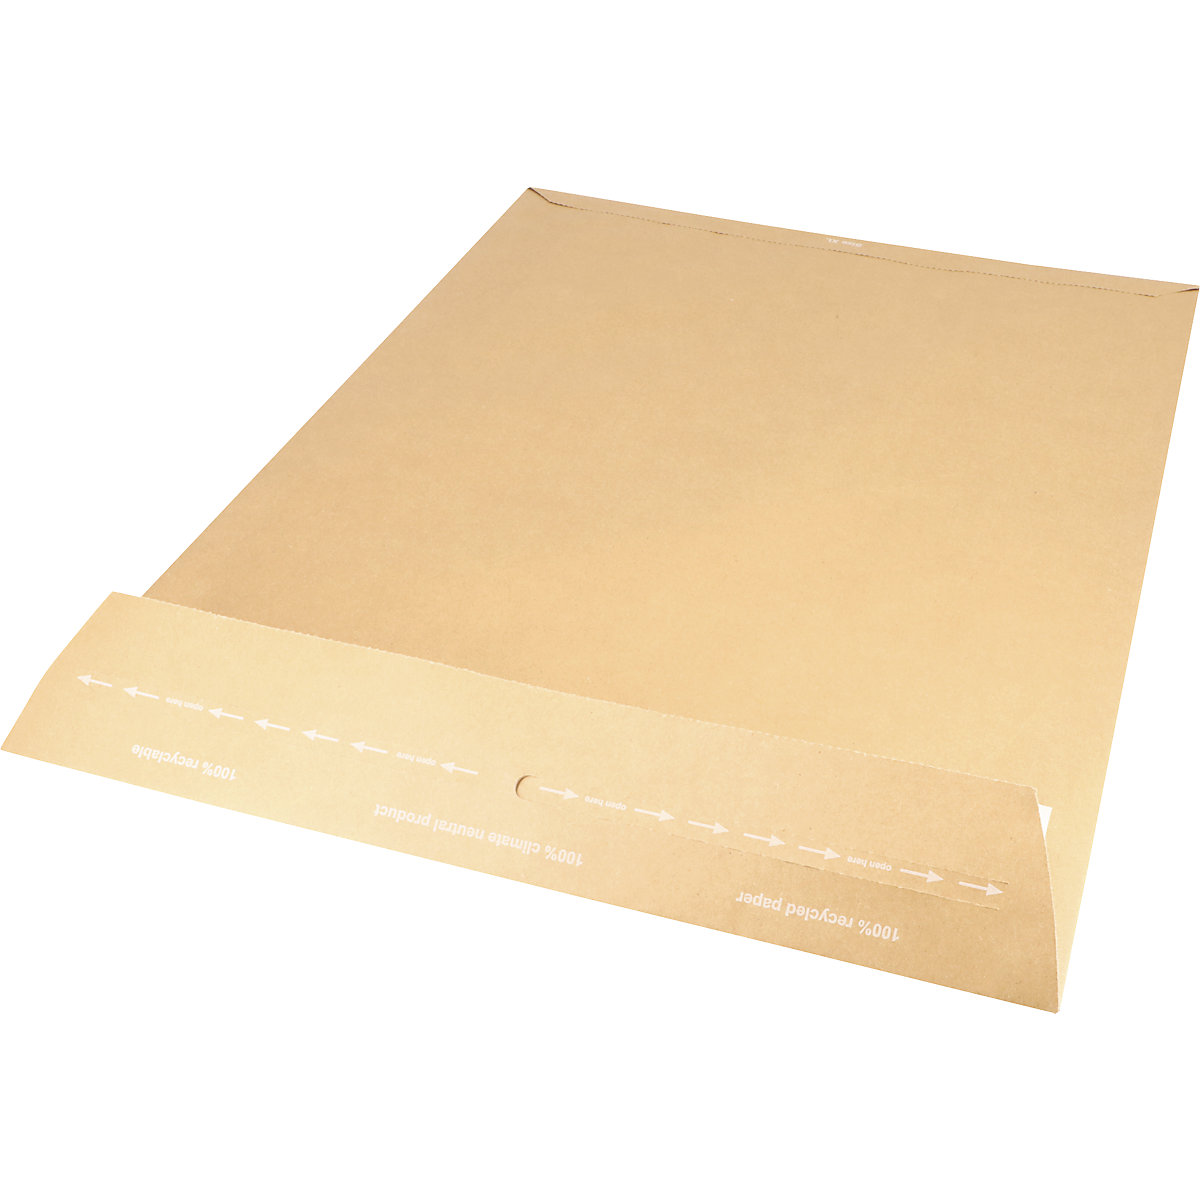 Versandtasche aus Papier E-Commerce terra, retourengeeignet, LxB 600 x 440 mm, VE 150 Stk-2